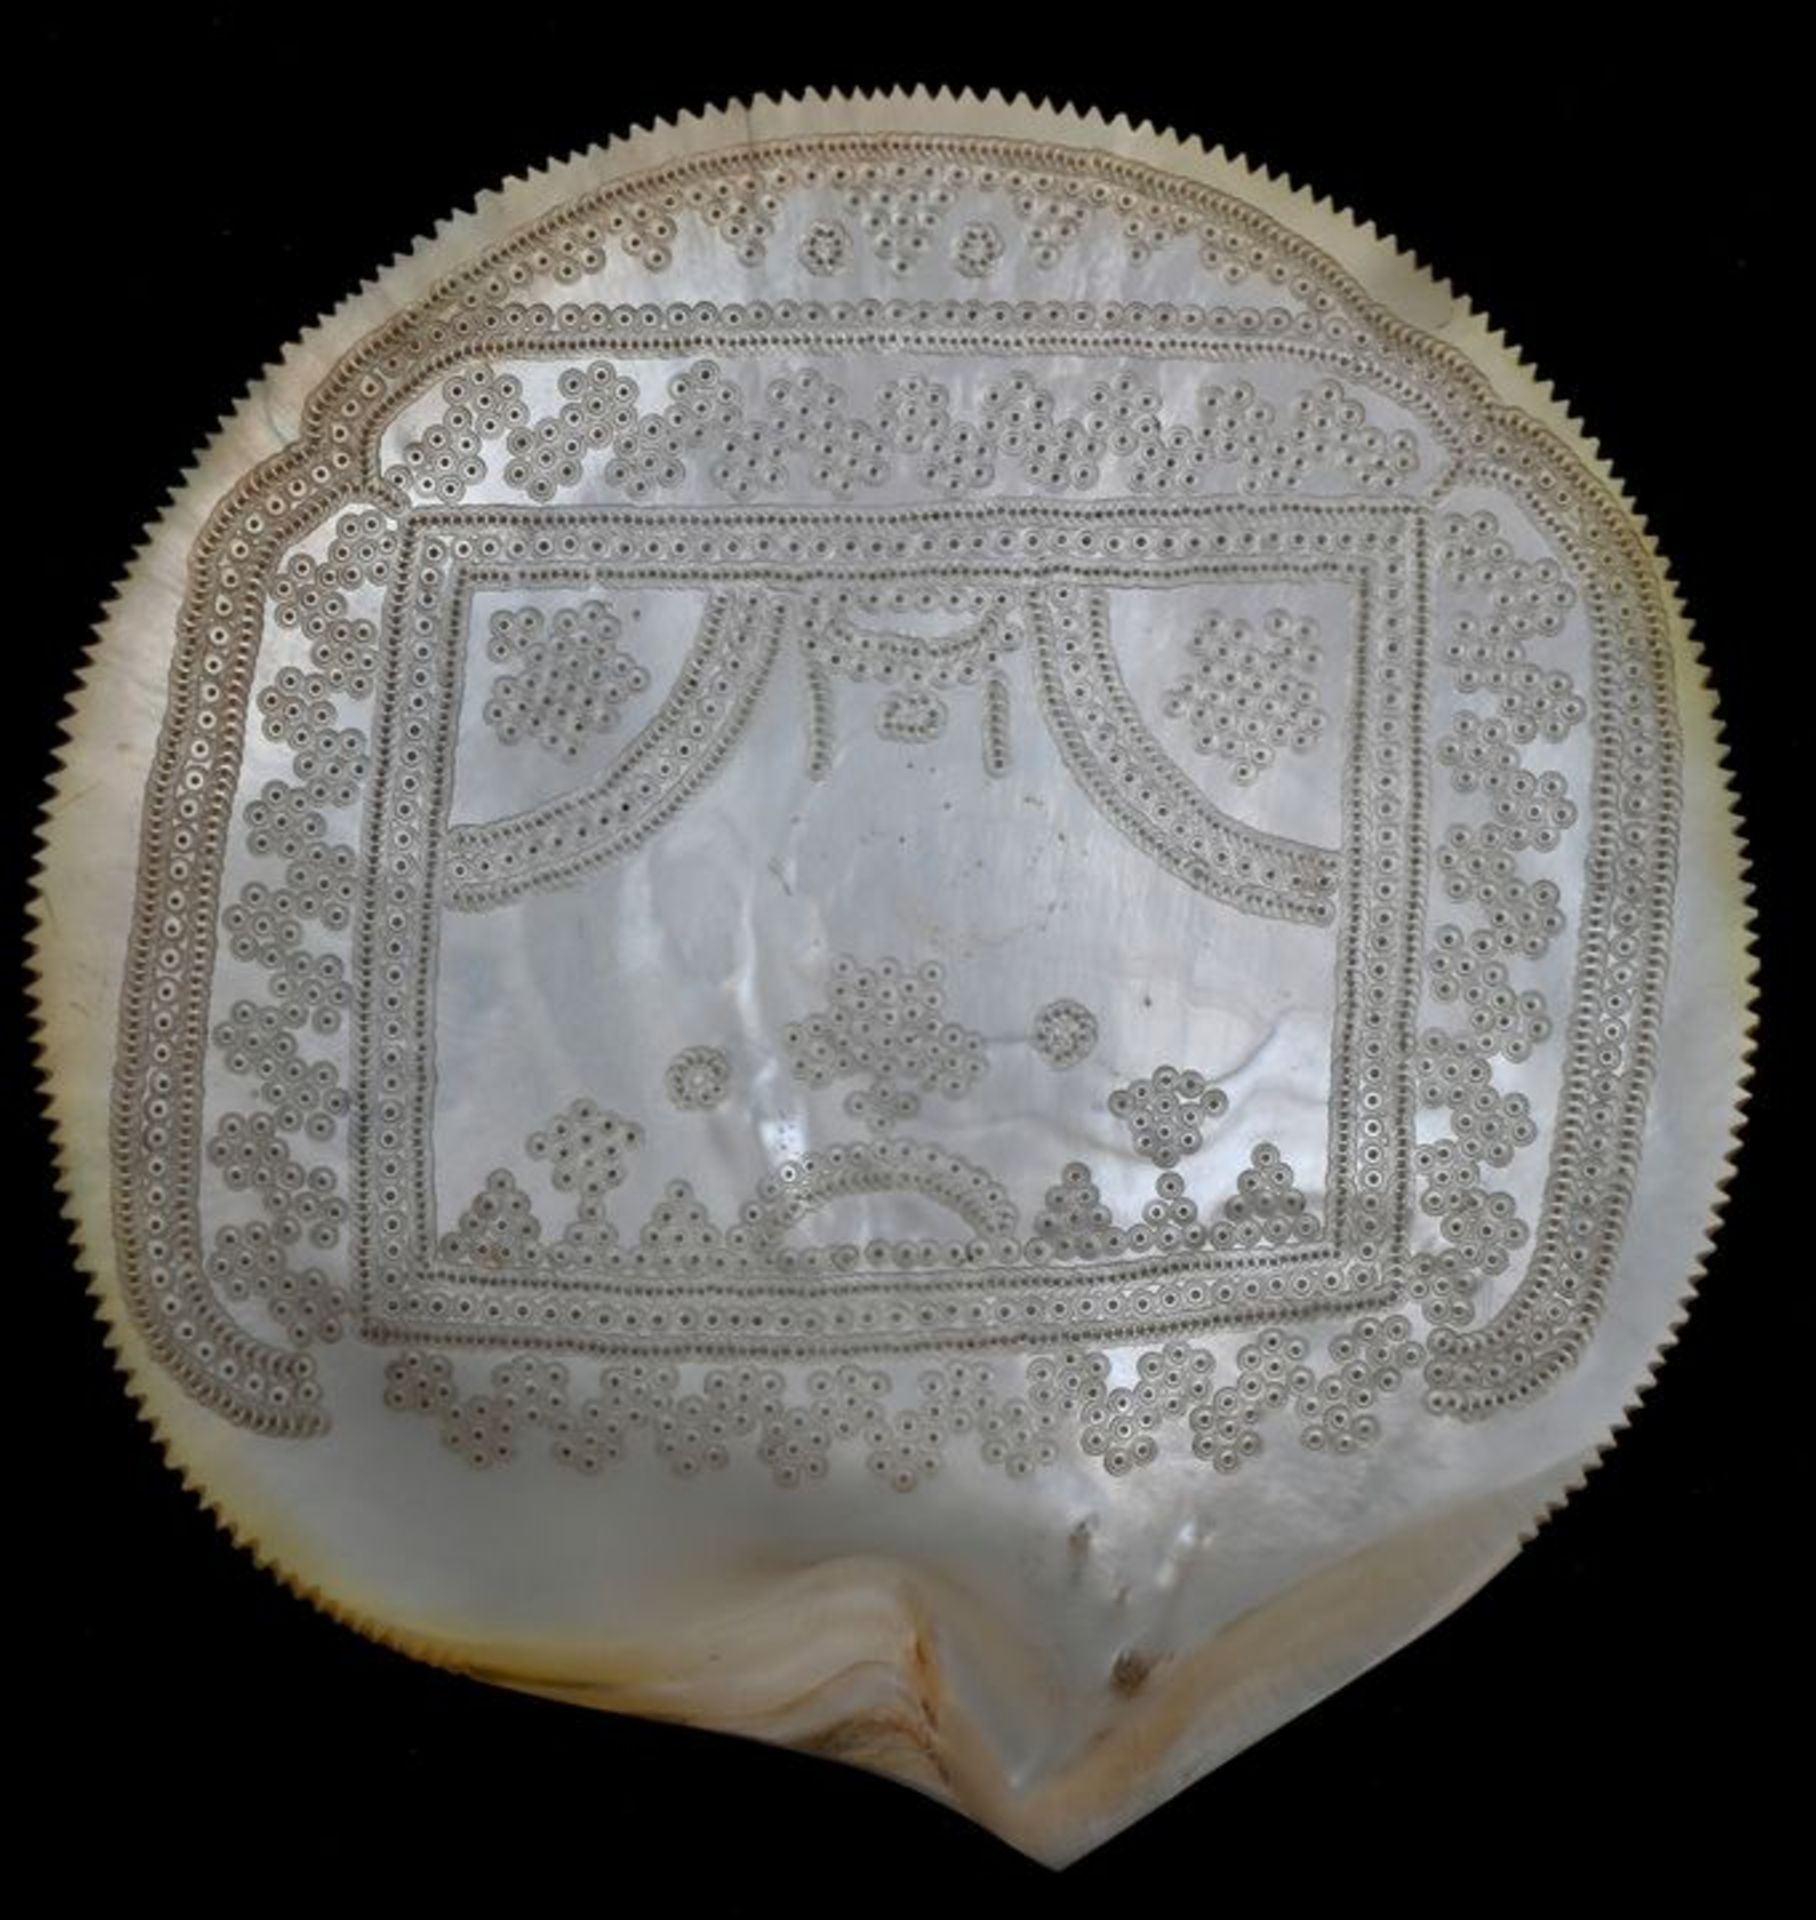 Muschel mit LochgravurPerlmutt Sammlernummerierung auf der Rückseite, D. 14,5 cm Shell with